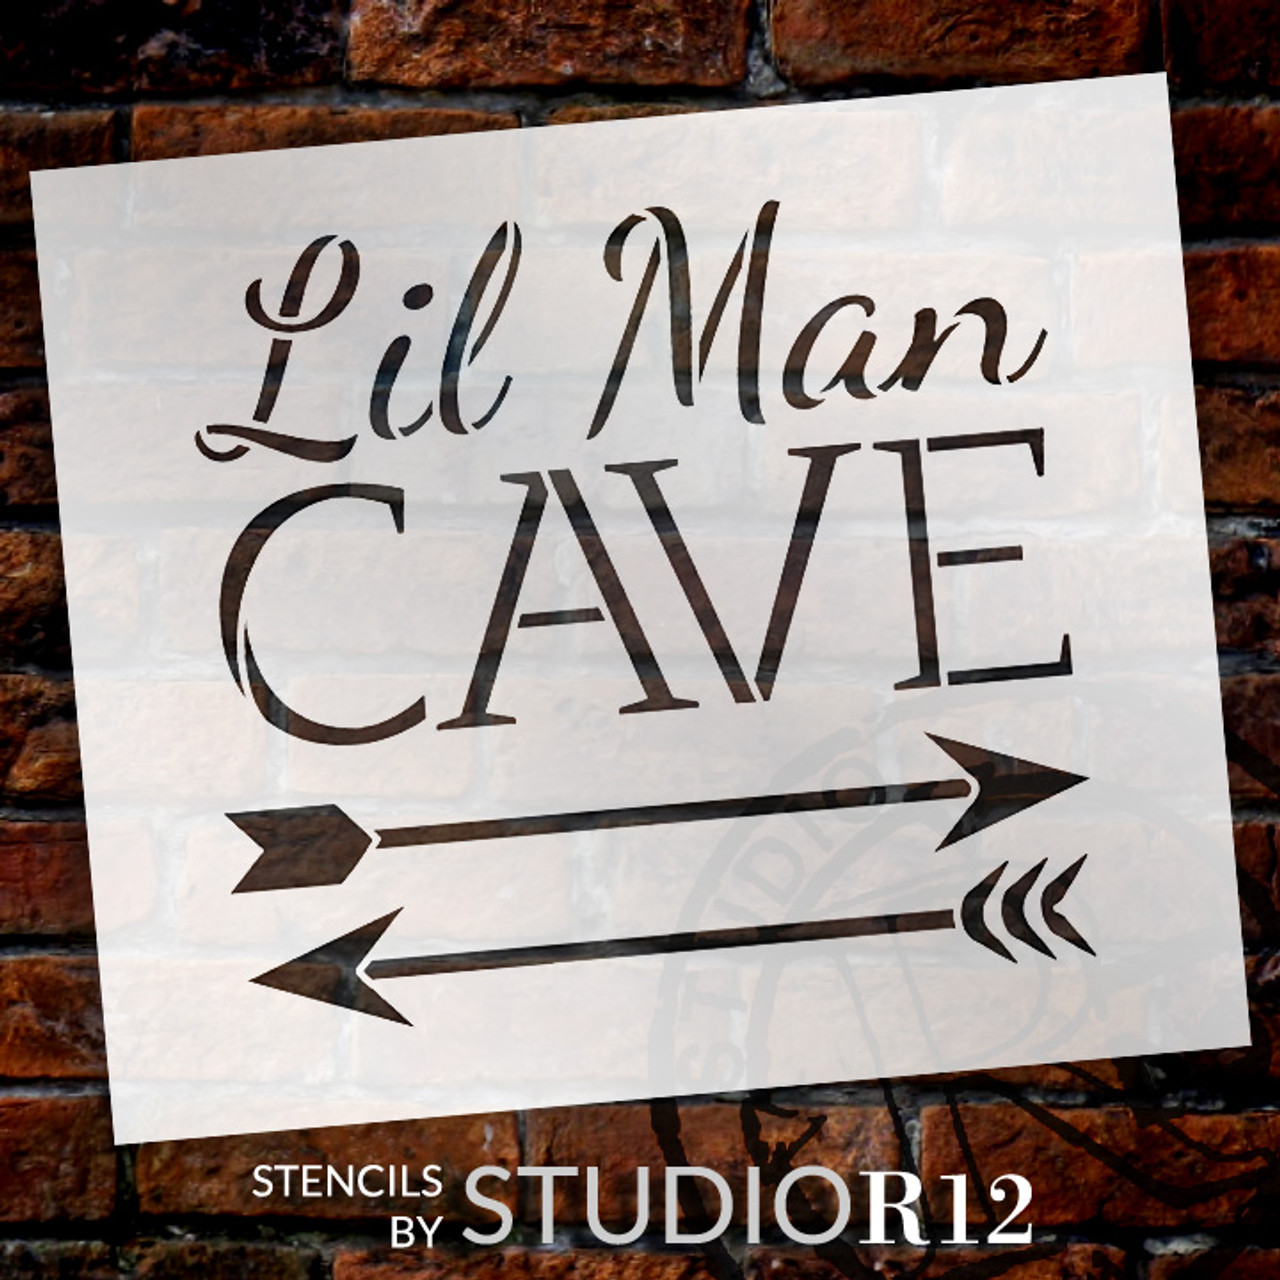 Lil Man Cave - Arrows - Word Art Stencil - 7" x 7" - STCL1838_1 - by StudioR12